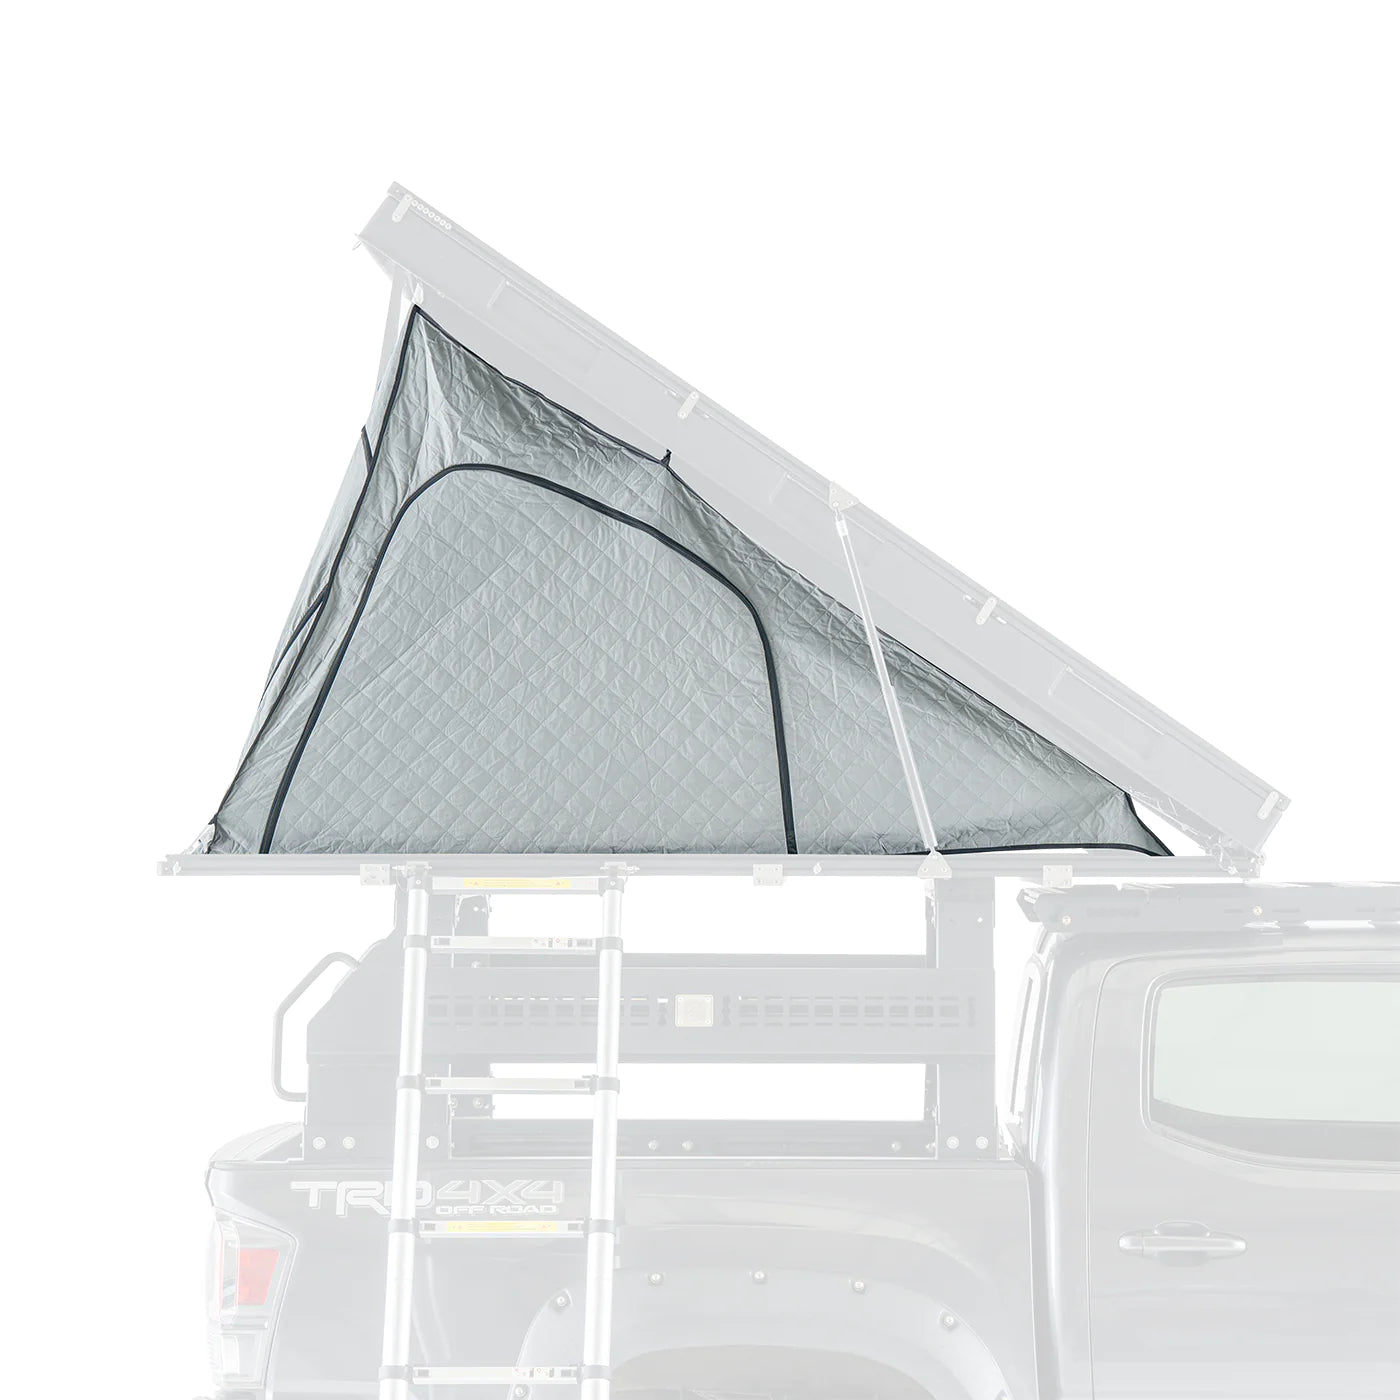 iKamper Inner Tent Insulation